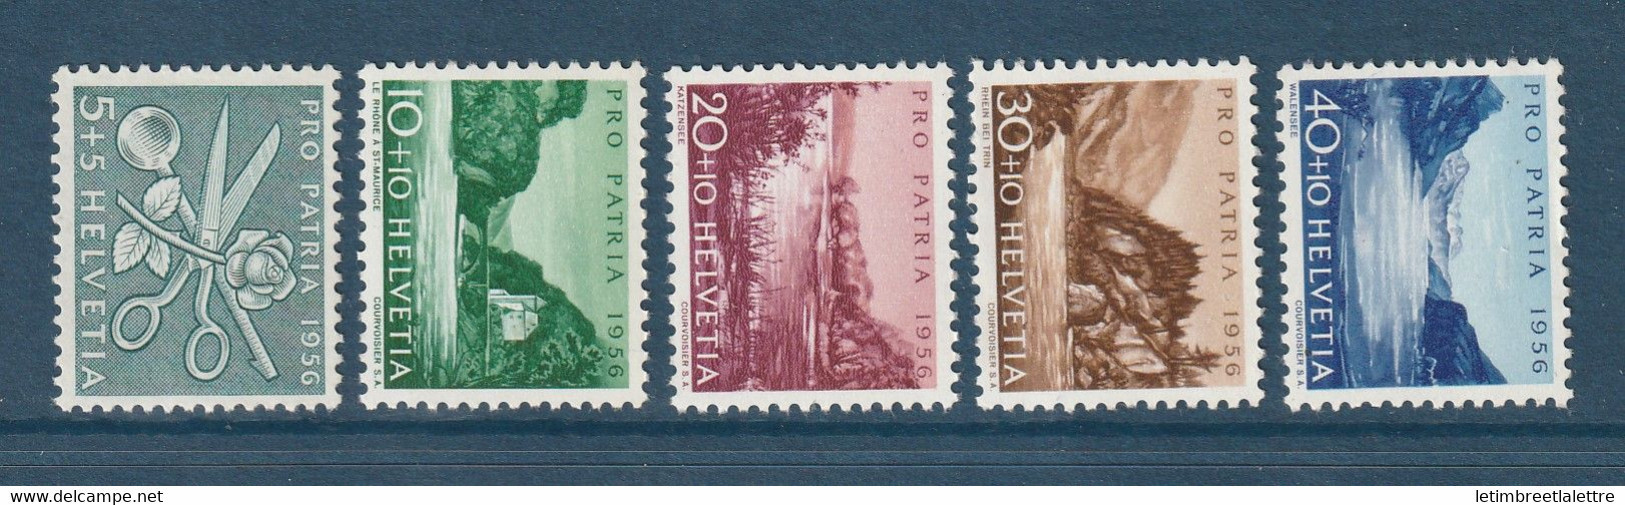 ⭐ Suisse - YT N° 576 à 580 ** - Neuf Sans Charnière - 1956 ⭐ - Unused Stamps